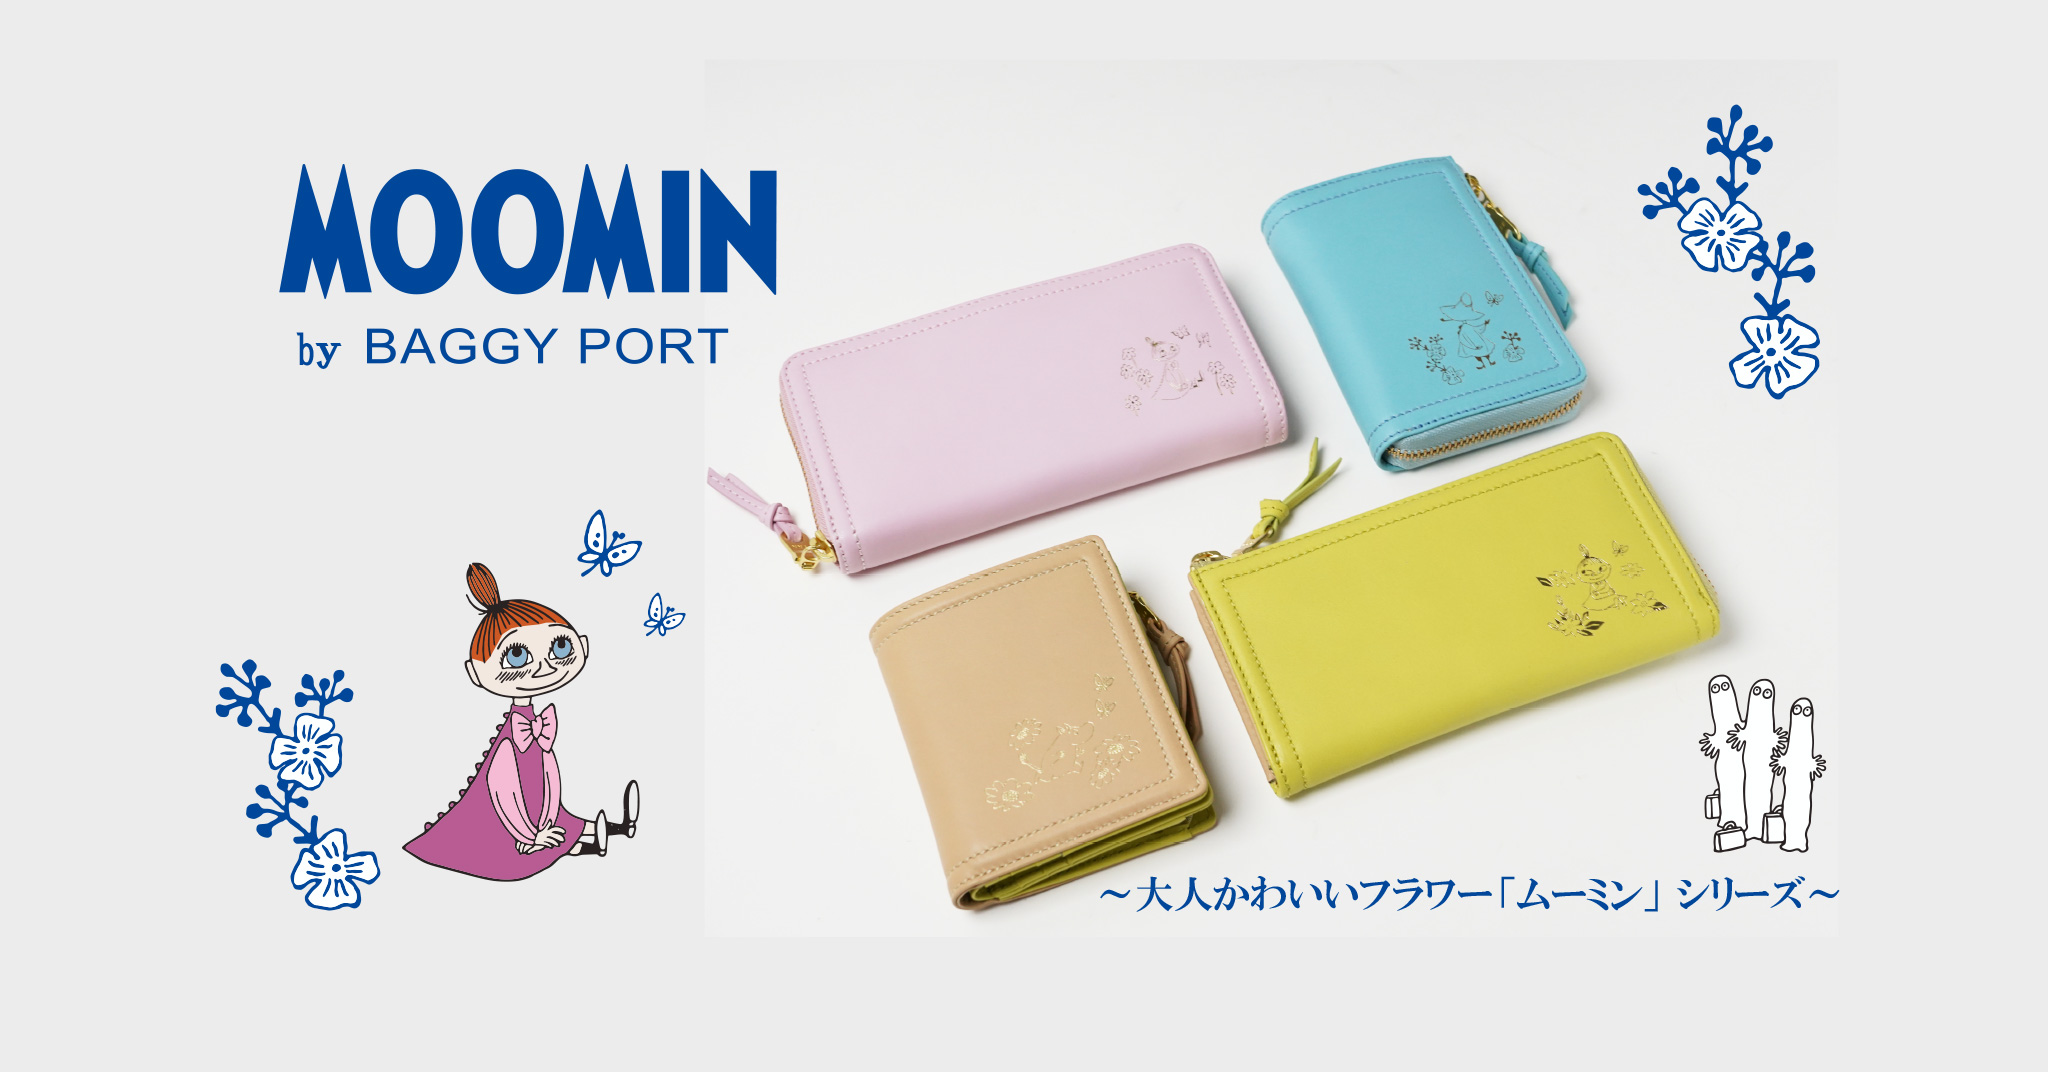 ムーミン公式サイト | Moomin Official Website